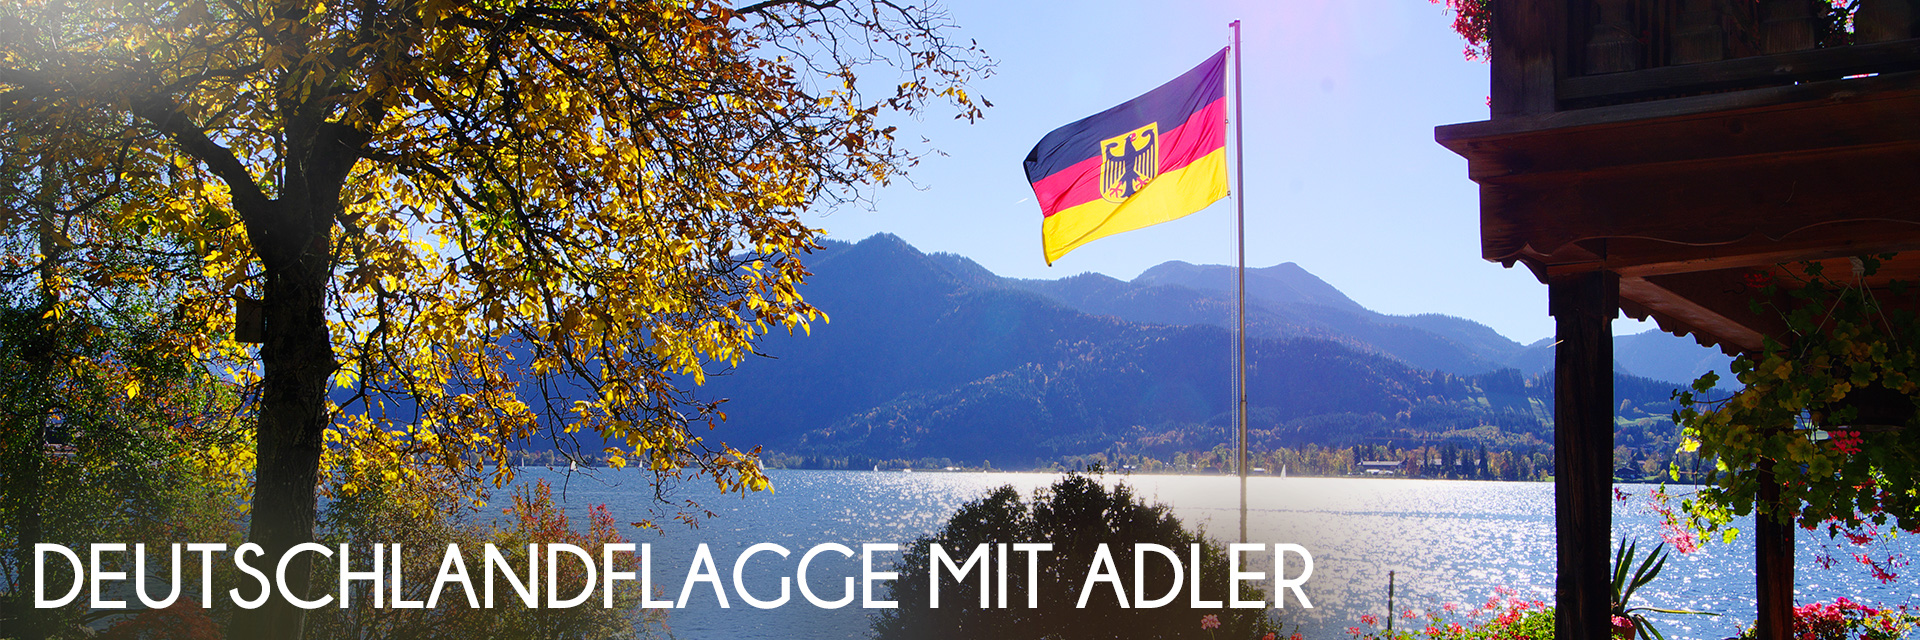 Fahne Deutschland + Adler 30 x 45 cm mit Stab 60 cm, schwarz-rot-gold, Deutschland, Länder + Nationen, Themen + Anlässe, Saisonal + Trends